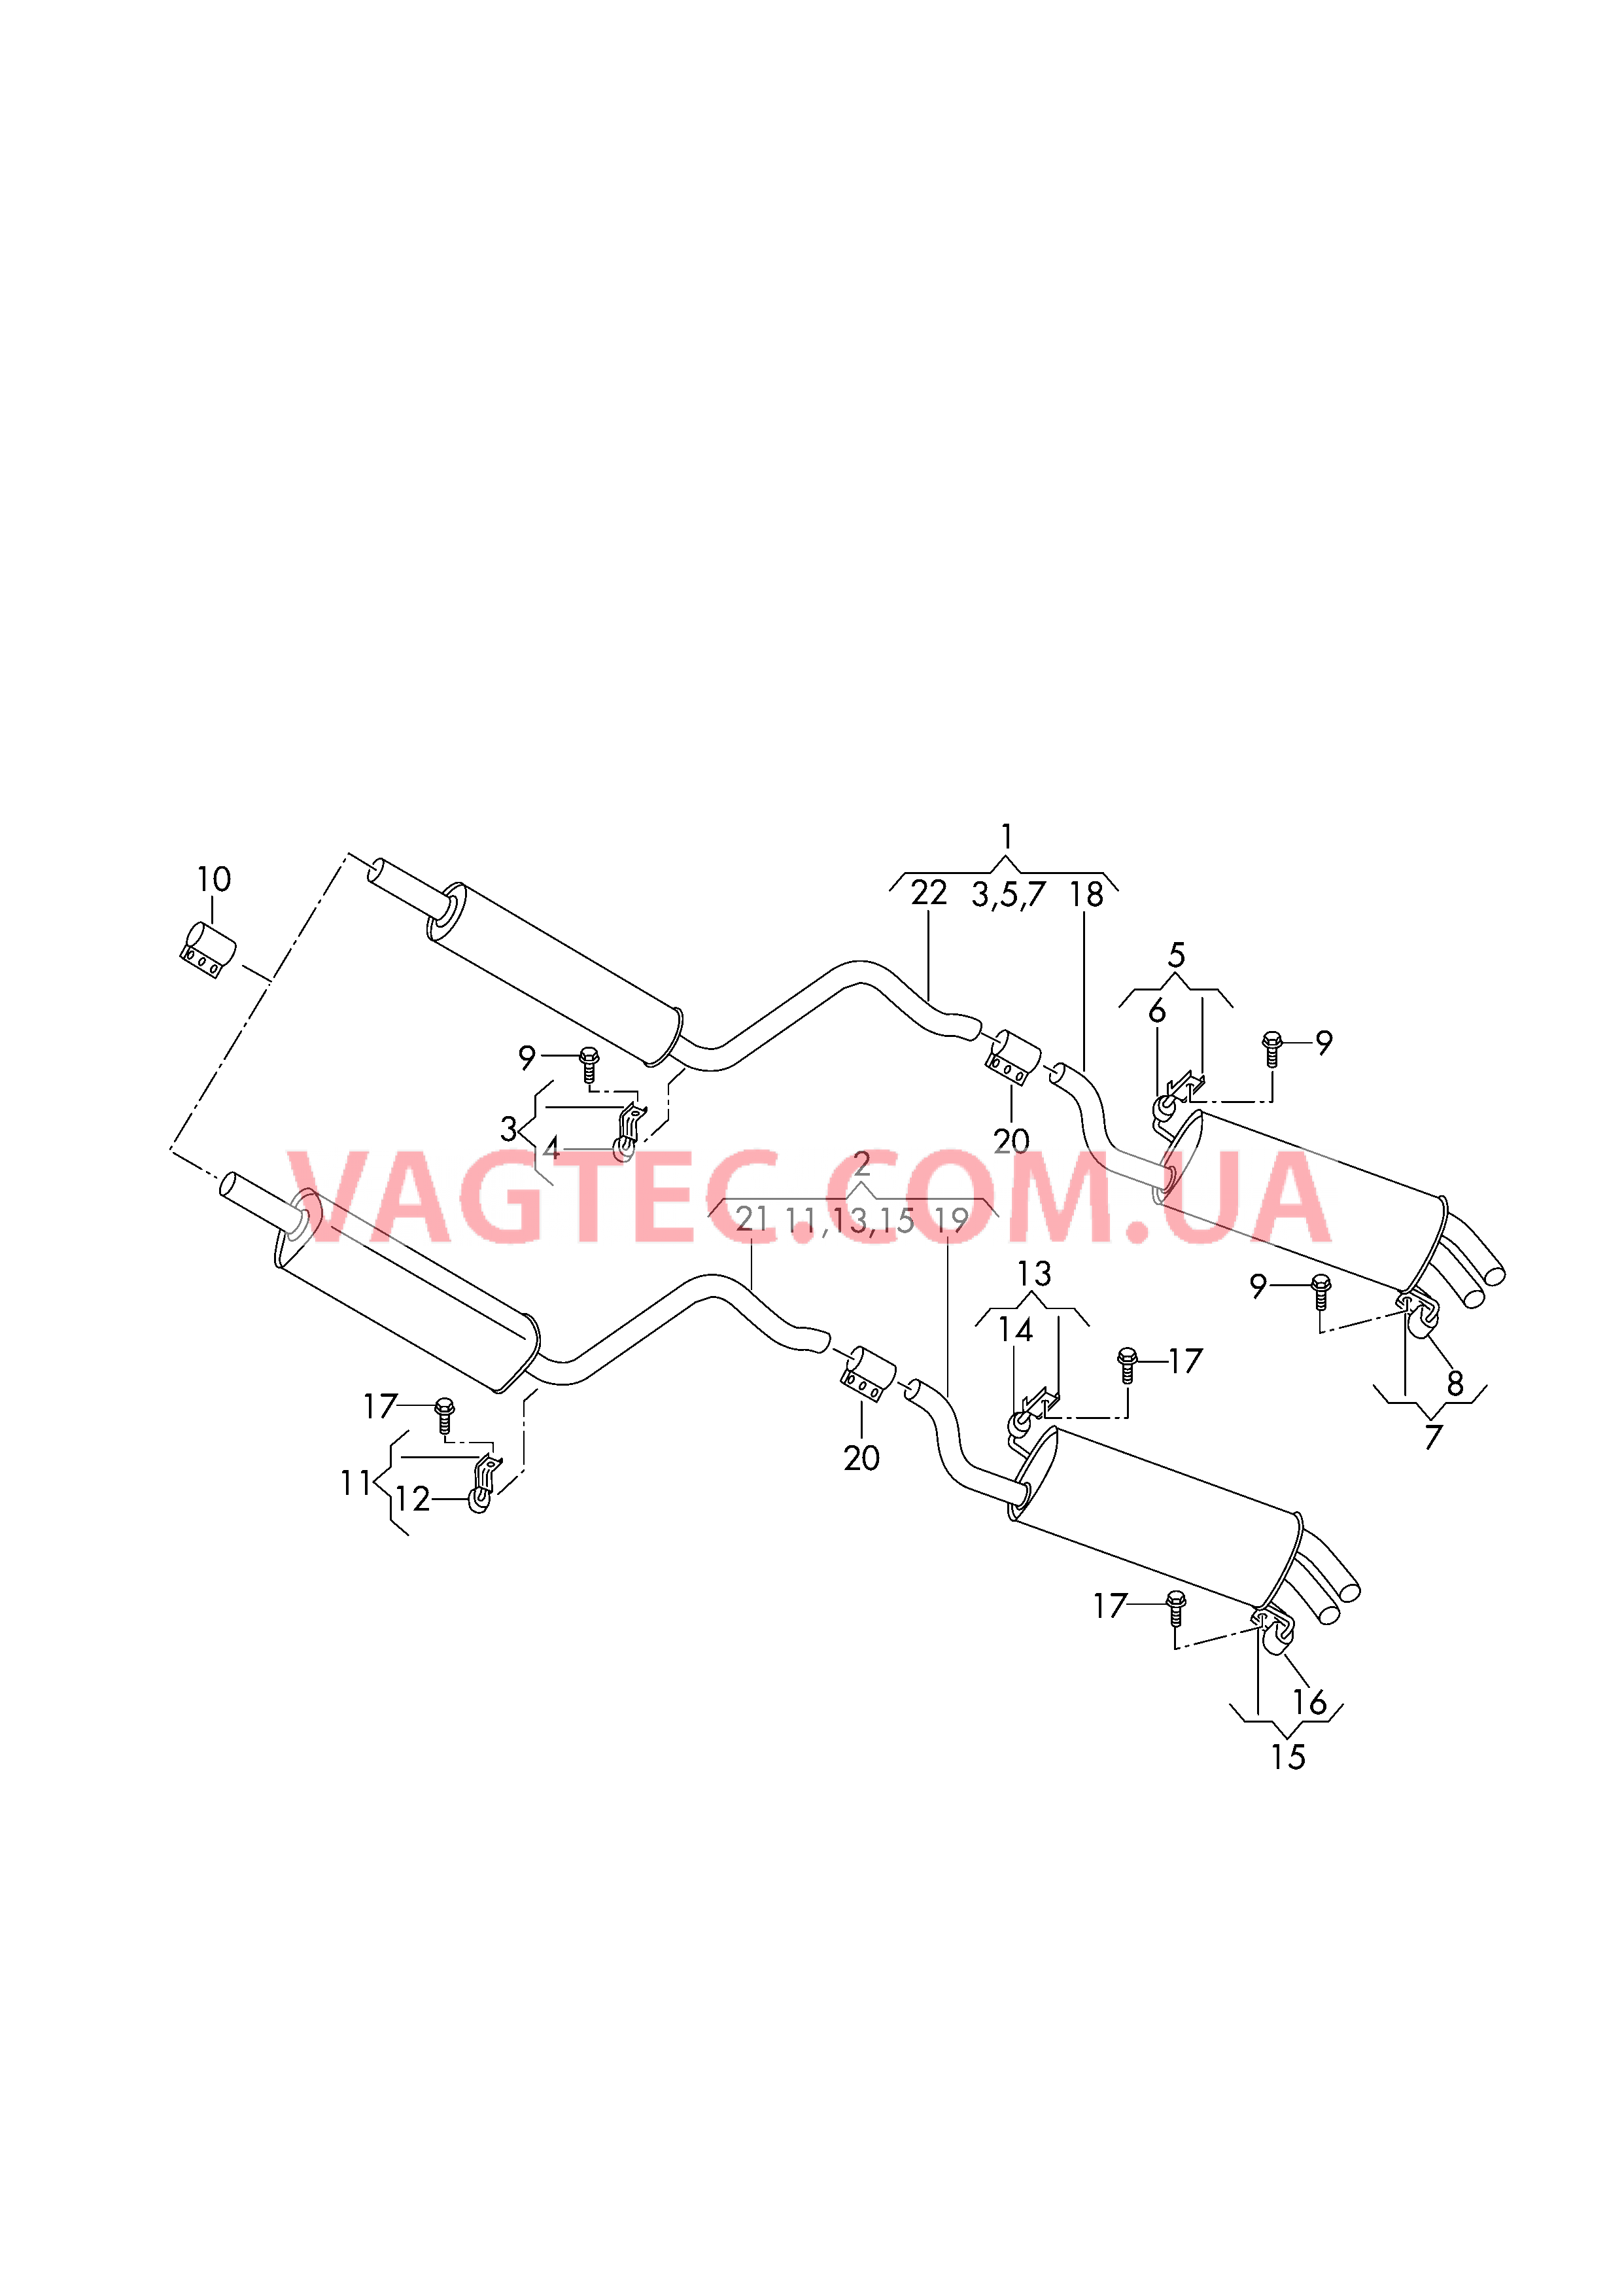 Передний глушитель Задний глушитель  для SKODA Octavia 2016